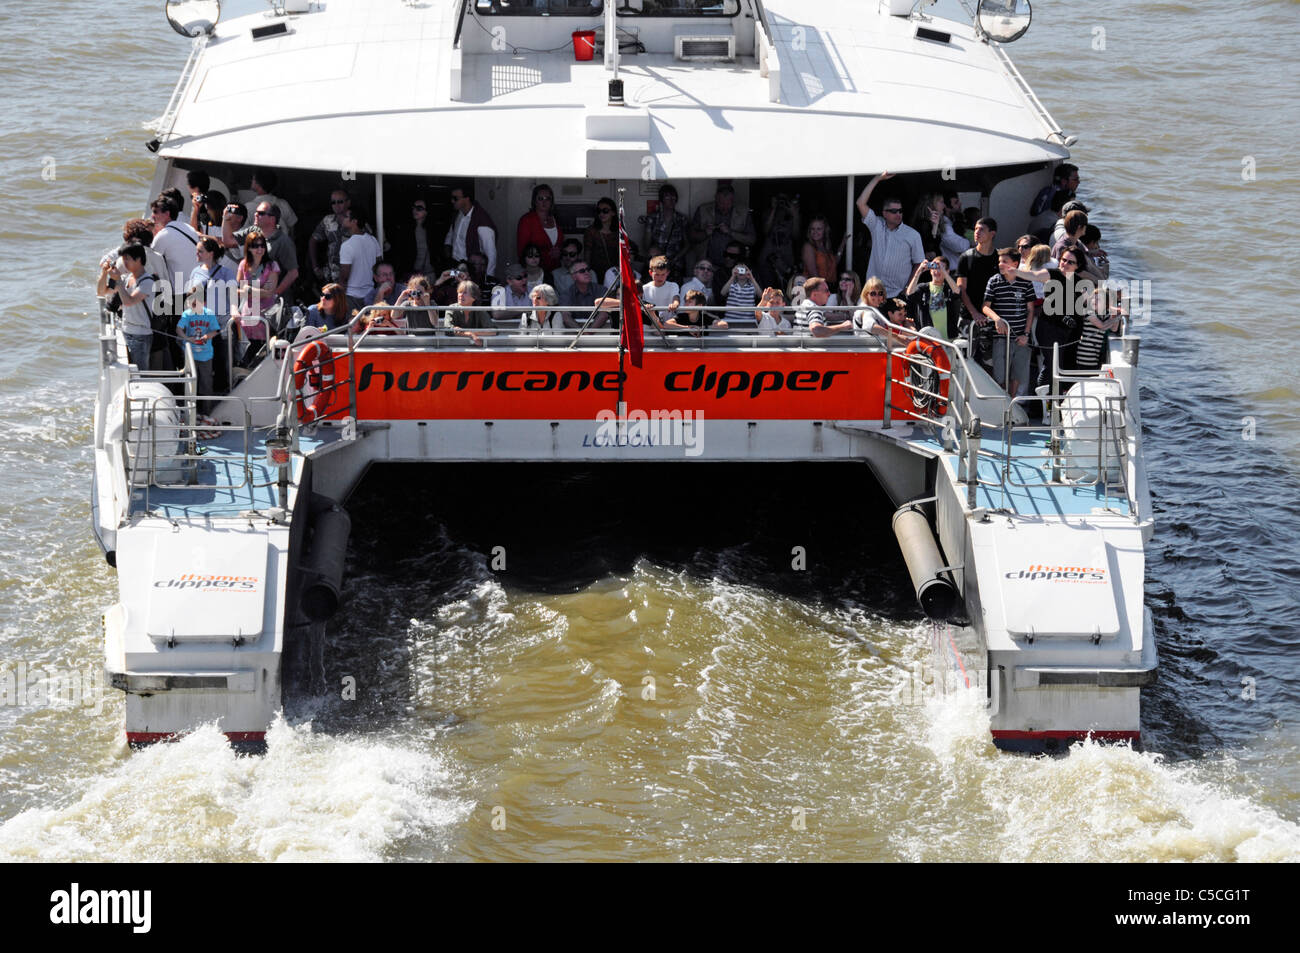 Menschenmenge Passagiere, die auf dem Heck des Thames Clipper reisen katamaran Boot ein öffentlicher Transport Flussbus Service auf London Berühmter Fluss England Großbritannien Stockfoto